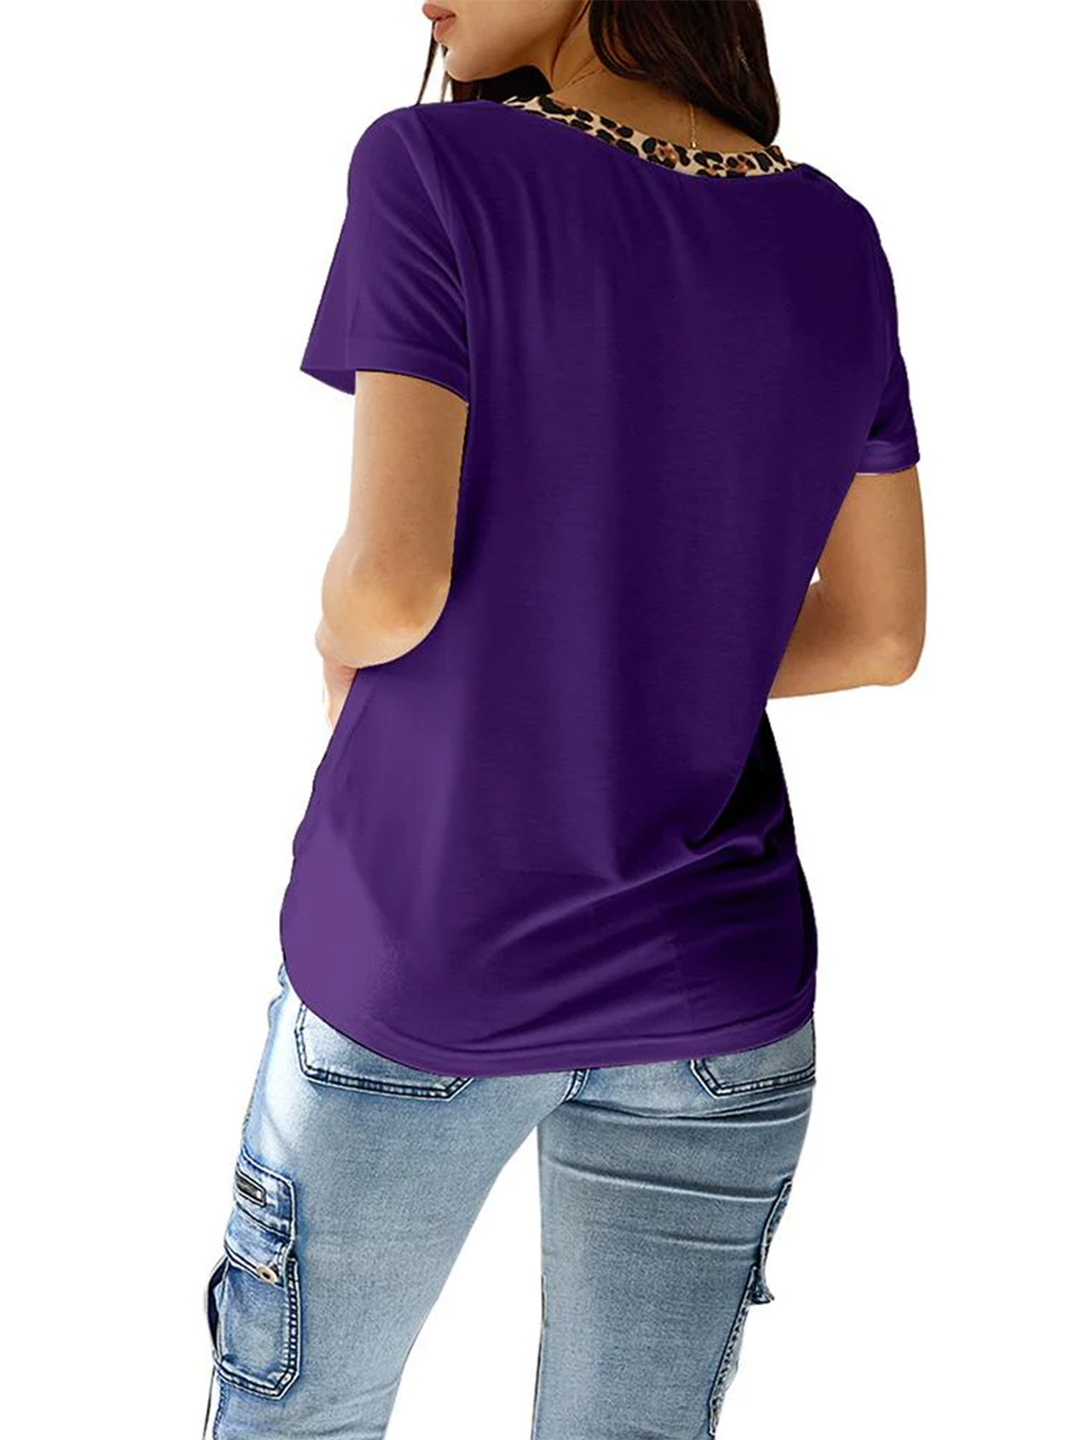 Women's Summer Leopard T-shirt V Neck Short Sleeve Casual T-shirt